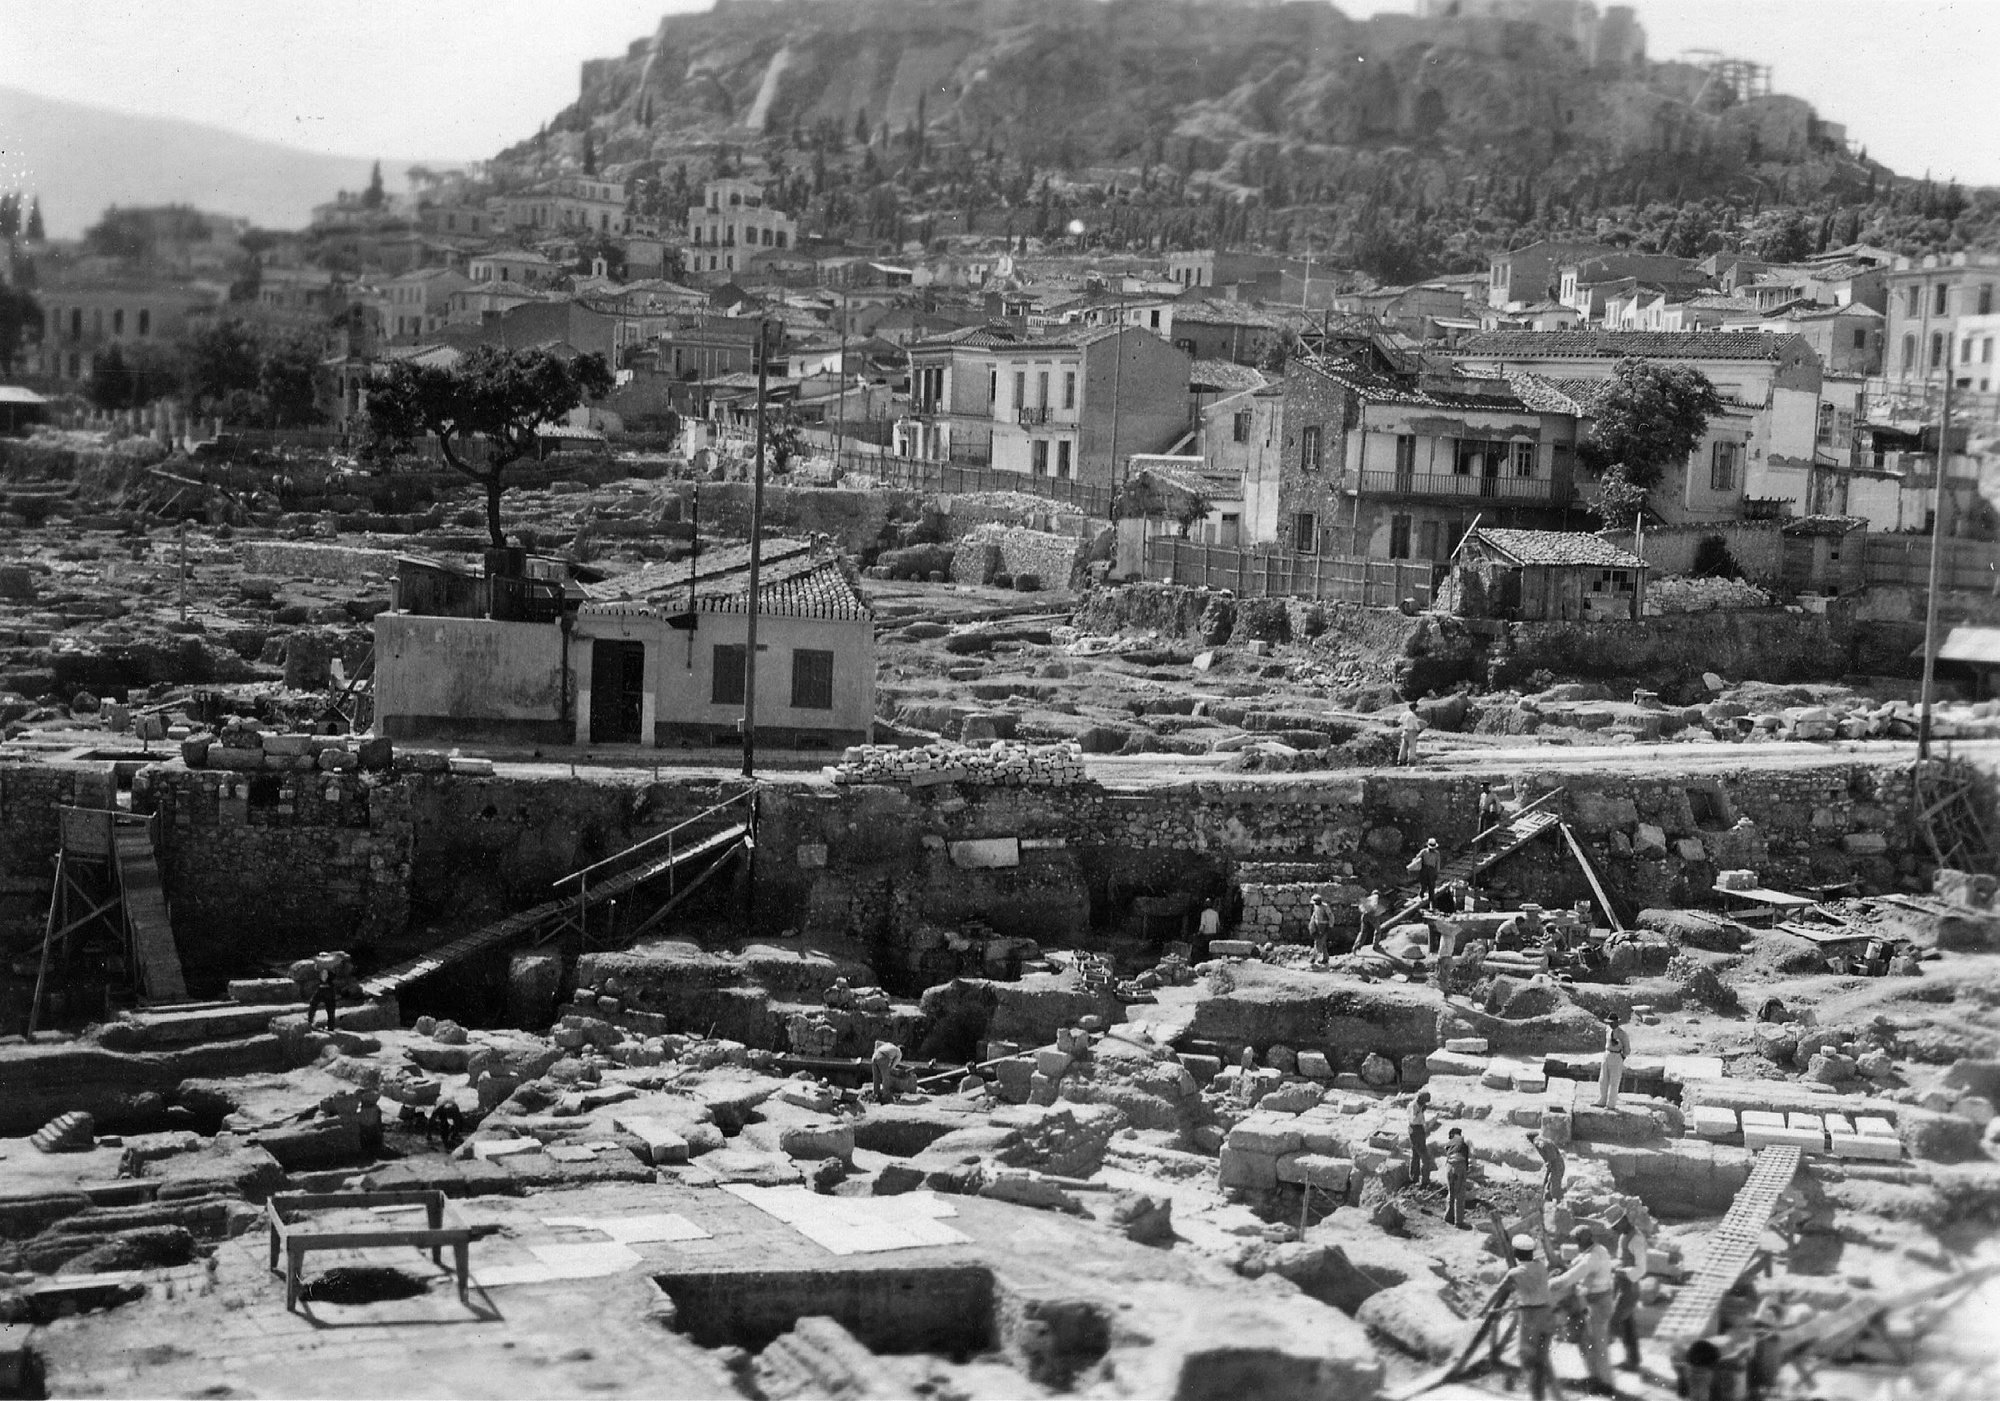 Bildergebnis für Dorothee Burr Thompson, Athenean Agora, Athen (1937), Schwarz-Weiß-Fotografie